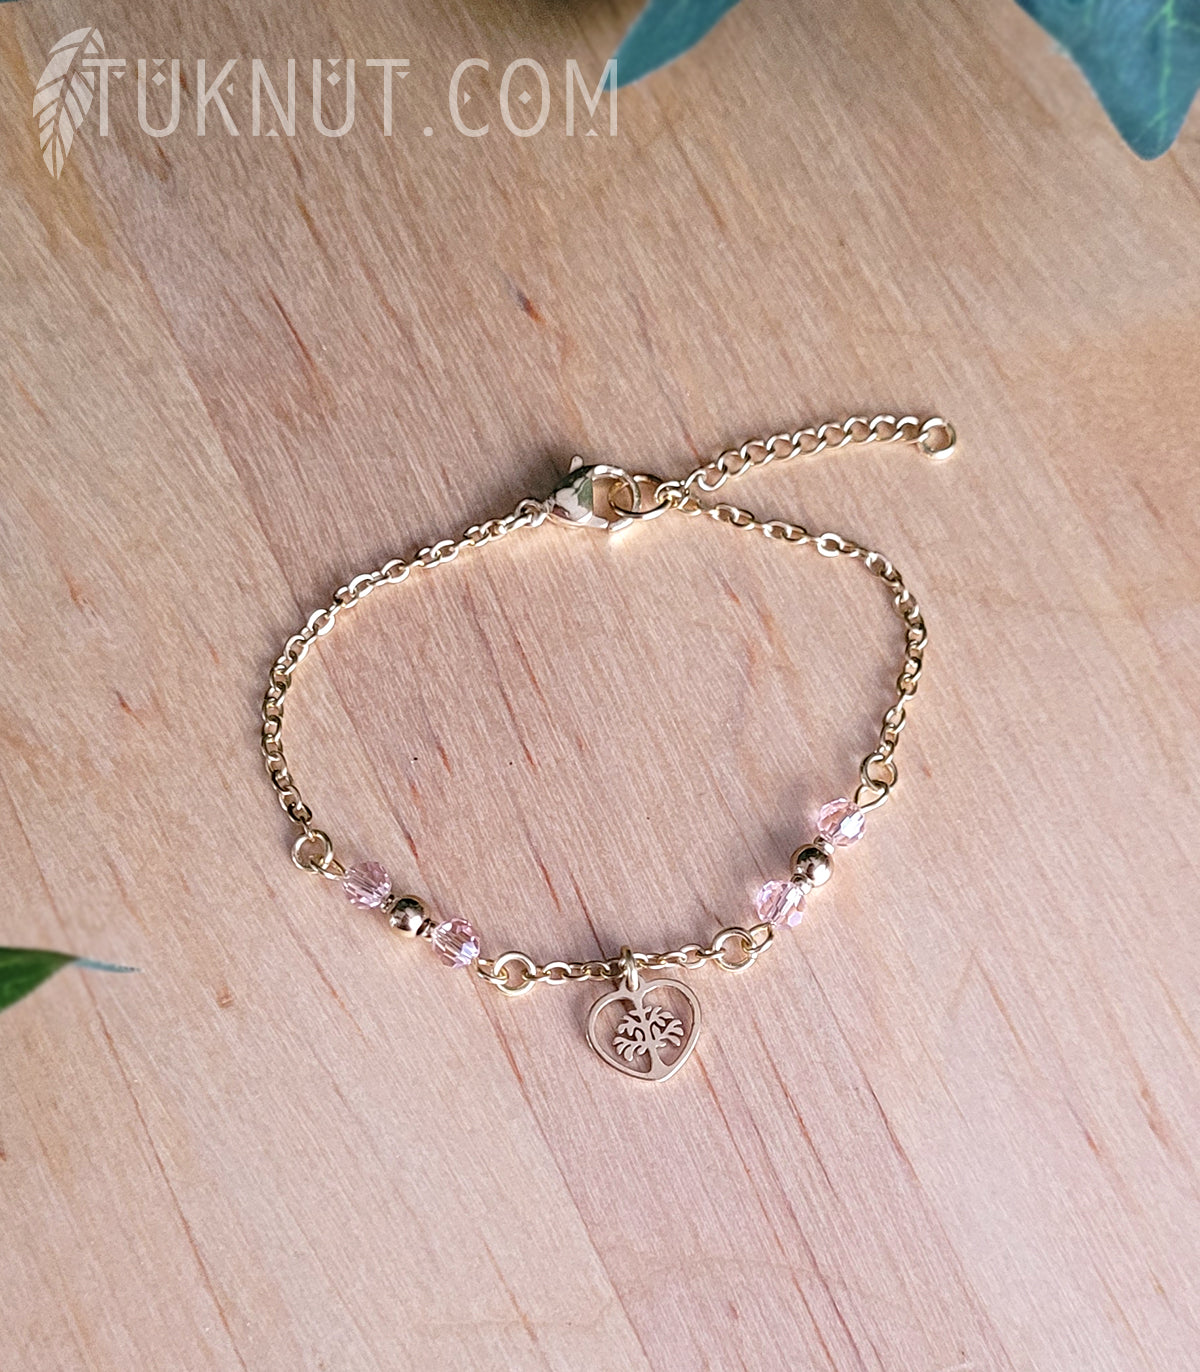 Bracelet d'inspiration autochtone en acier inoxydable avec arbre de vie dans un coeur doré avec cristal rose (couleurs : or et rose) TUKNUT